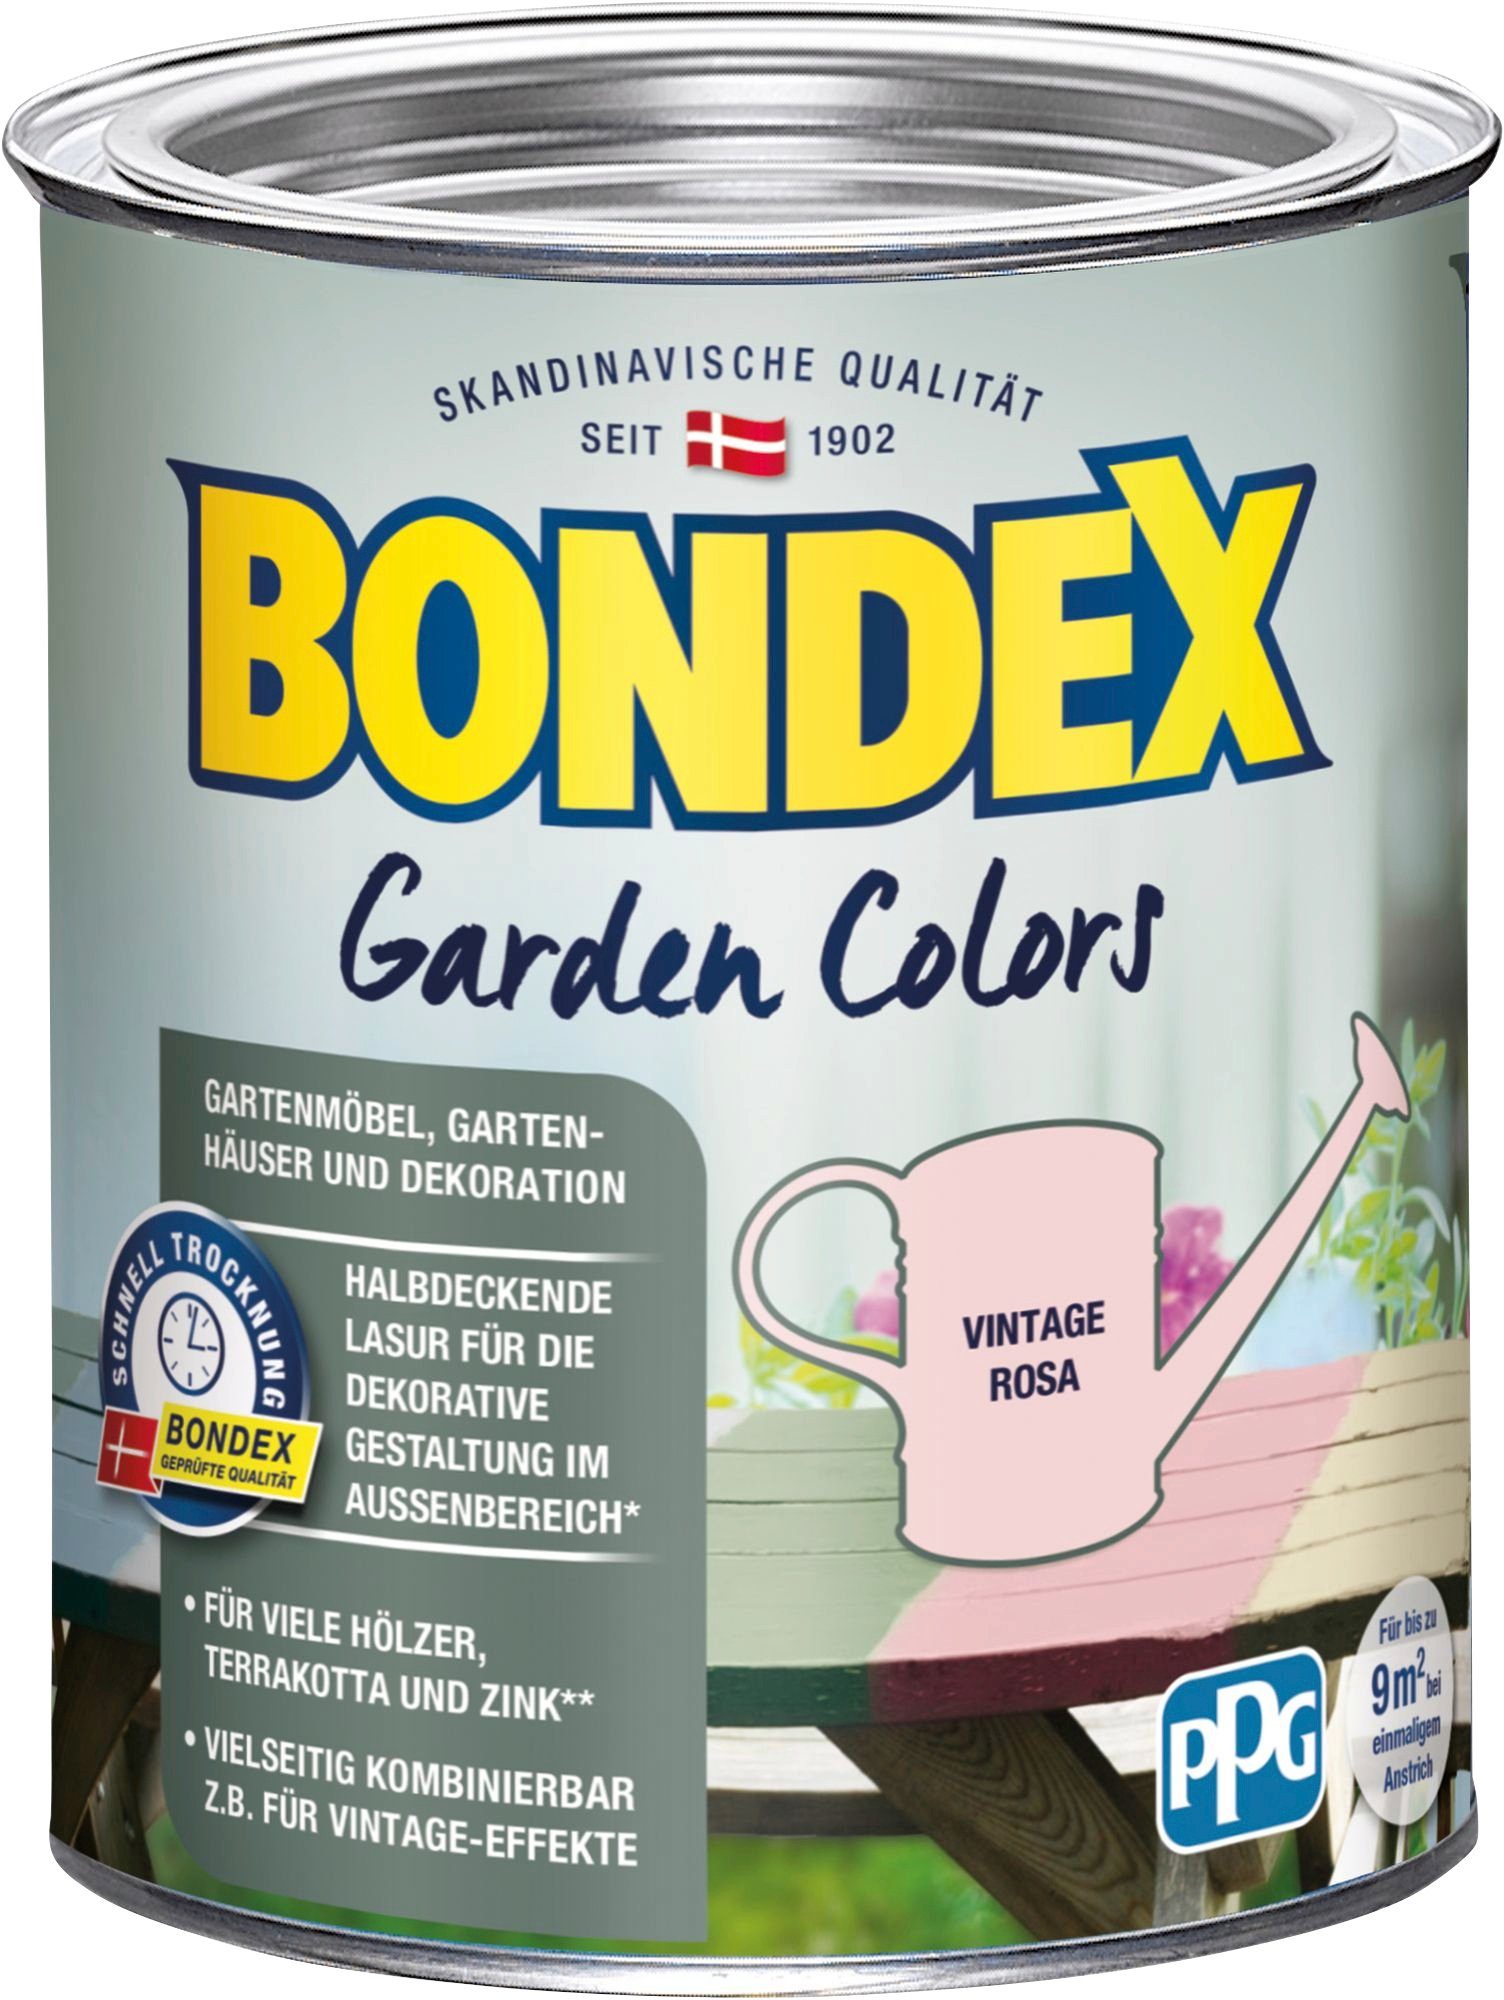 Bondex Wetterschutzfarbe GARDEN COLORS, Behagliches Grün, 0,75 Liter Inhalt Vintage Rosa